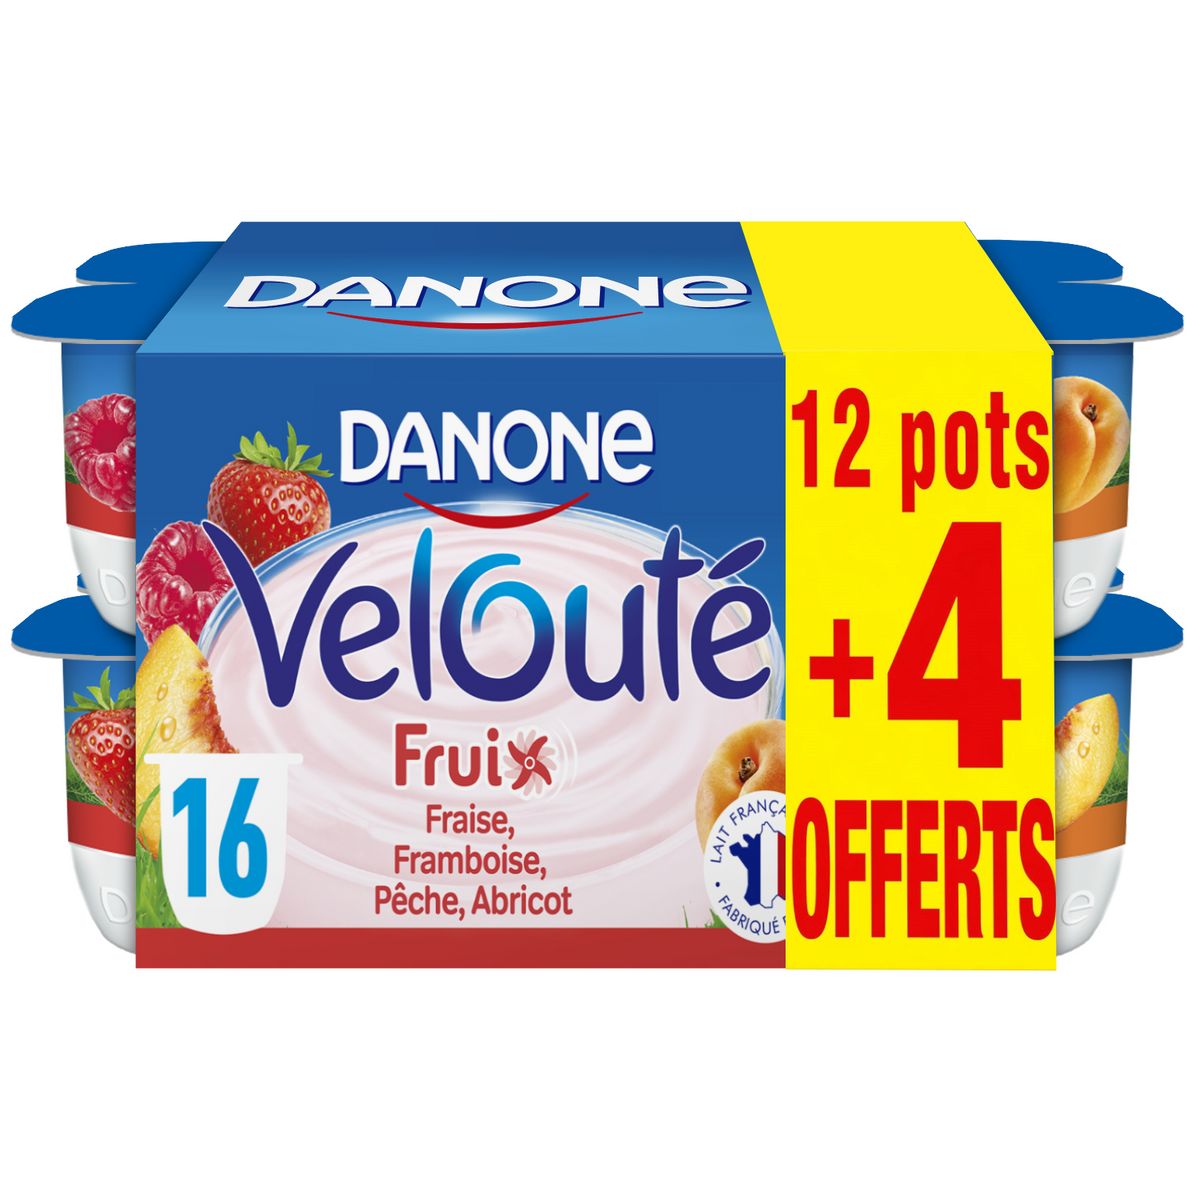 DANONE Velouté Fruix yaourt brassé sucré fraise framboise pêche et abricot 12+4 offerts 16x125g